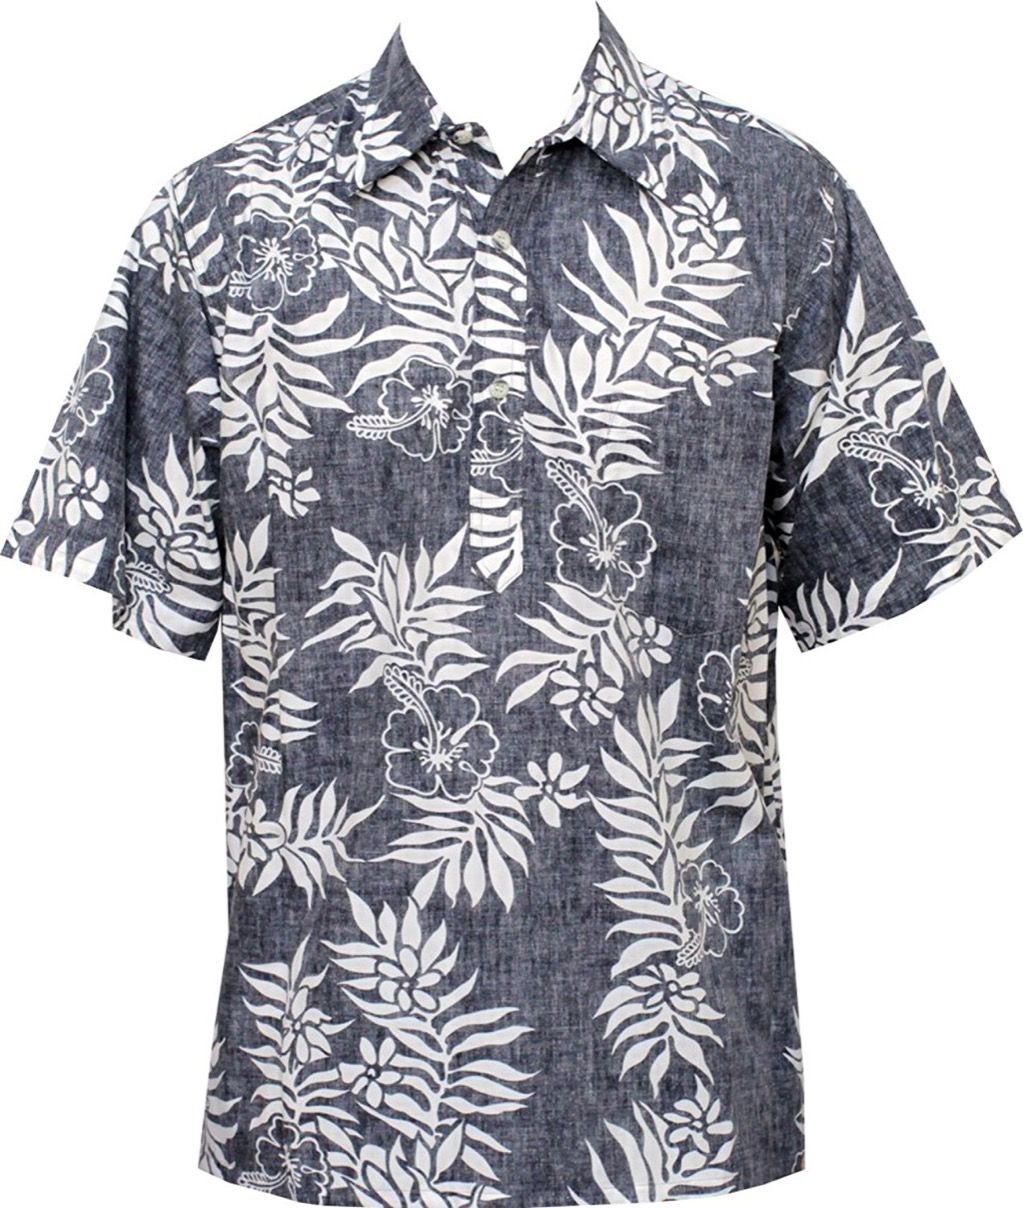 10 חולצות הוואי לטלטל אווירה מגניבה של האי לאורך כל הקיץ